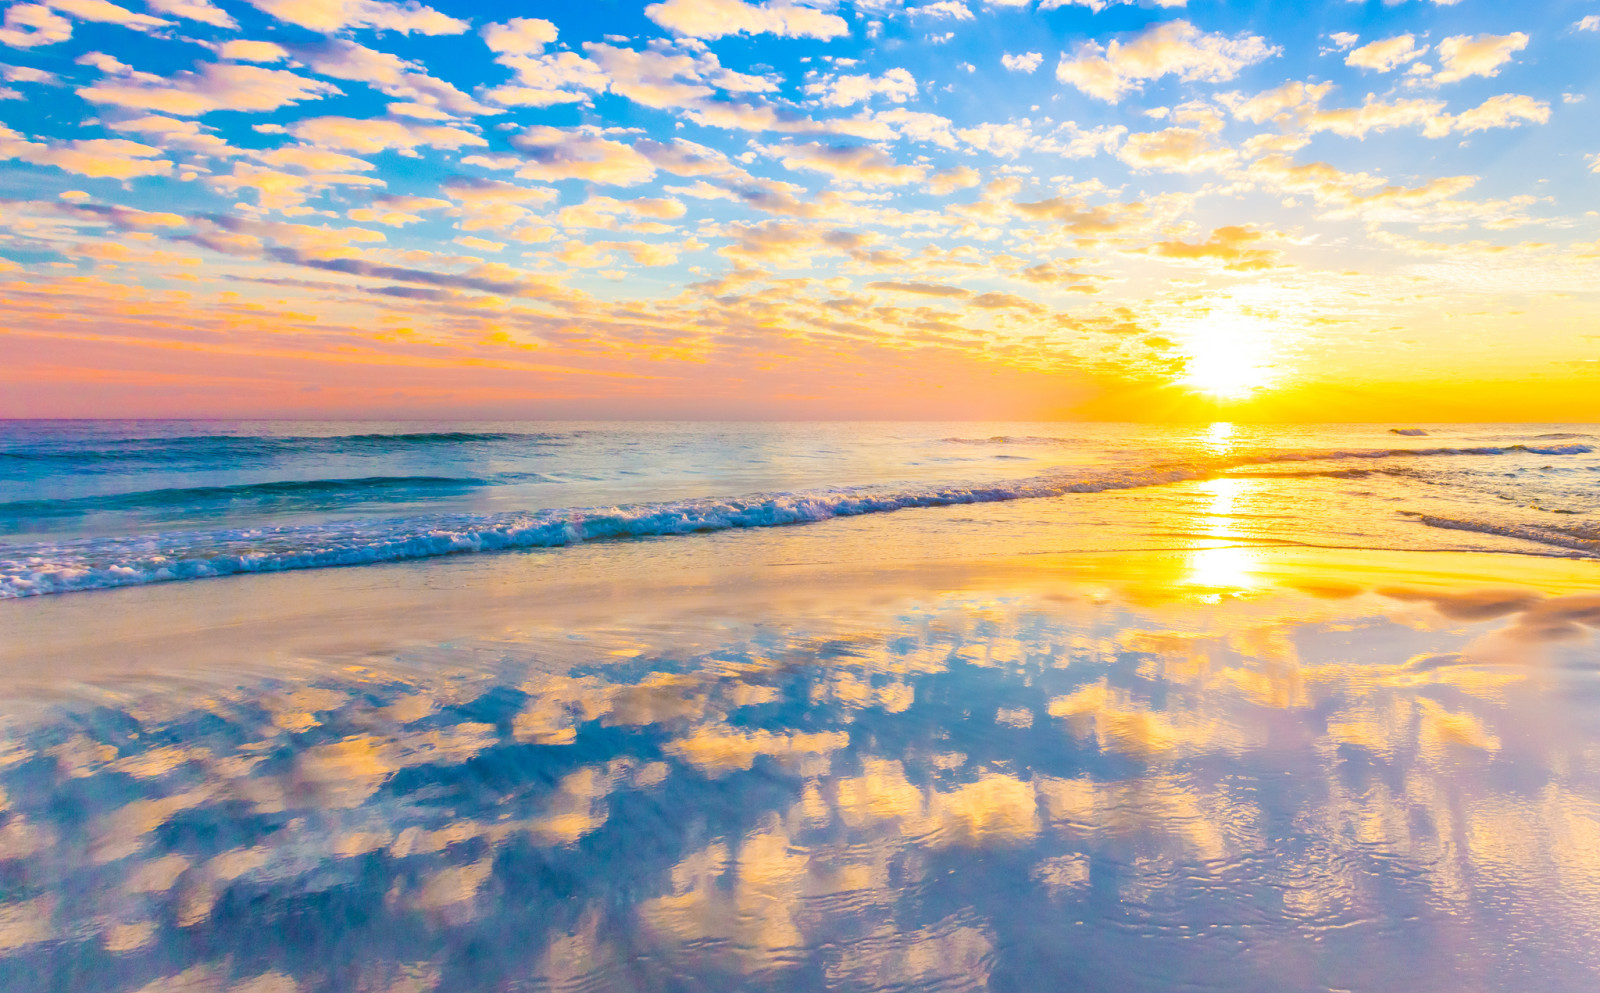 matahari terbenam, refleksi, pantai, laut, awan, gelombang, cermin